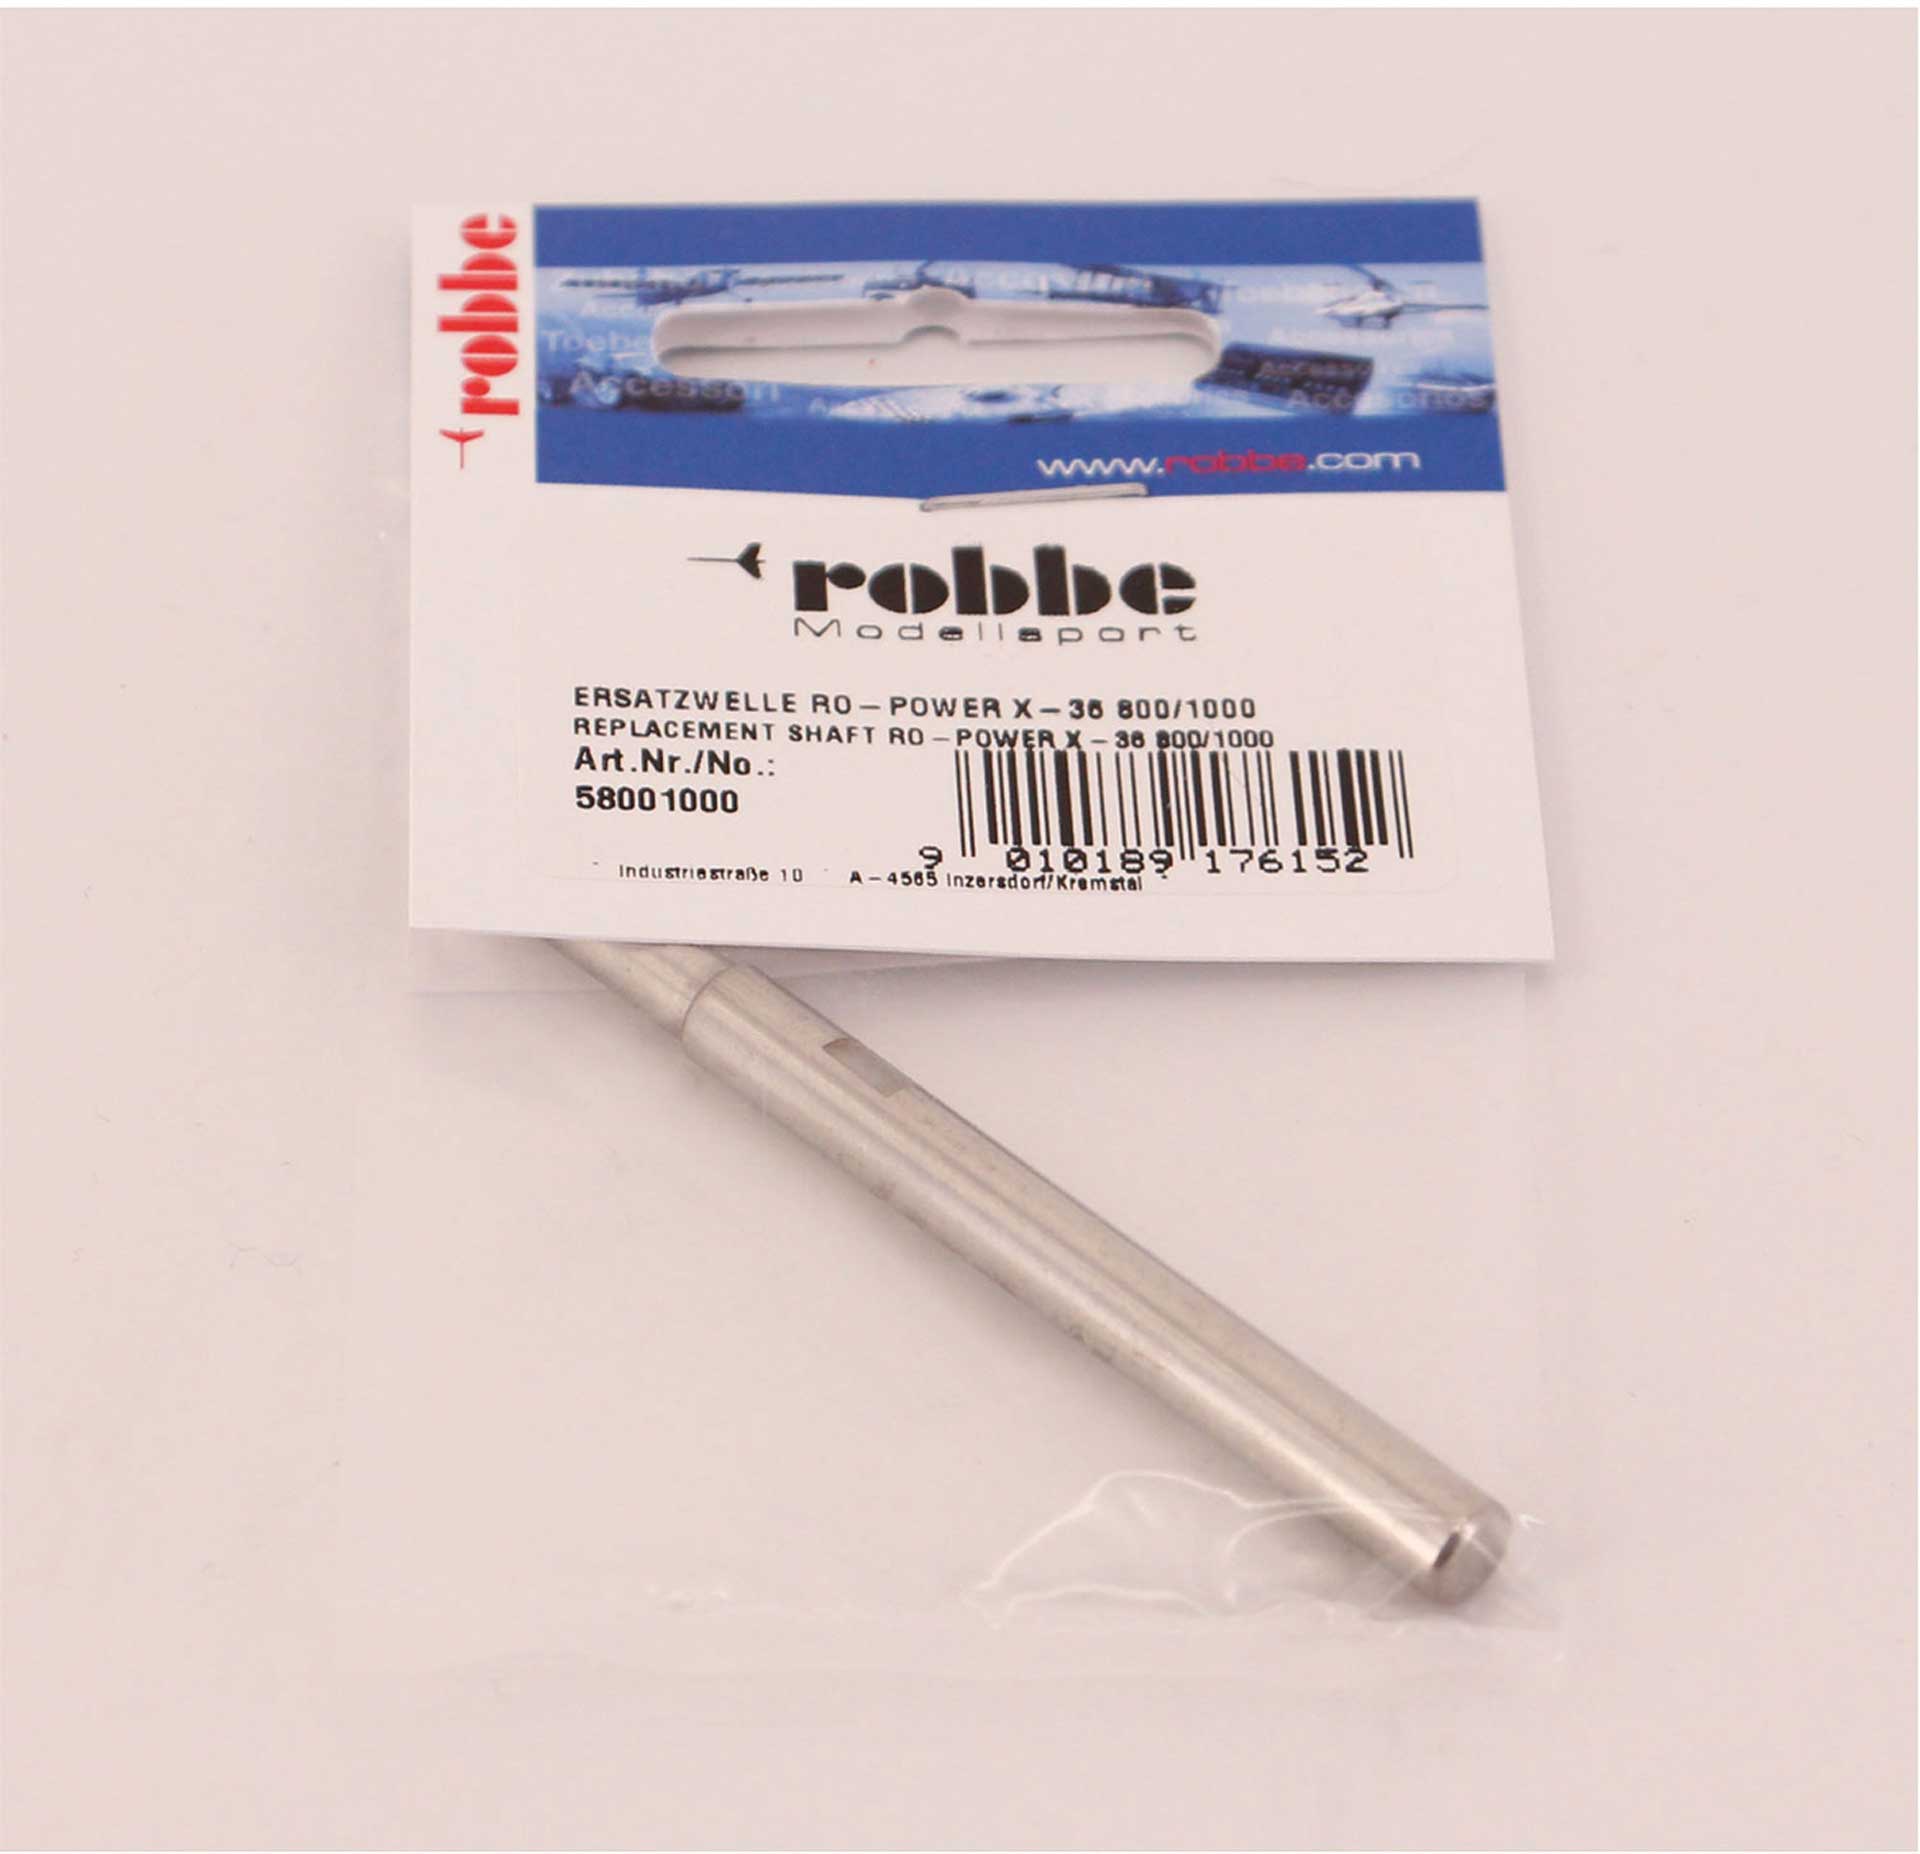 Robbe Modellsport AXE MOTEUR  RO-POWER TORQUE X-36 800/1000